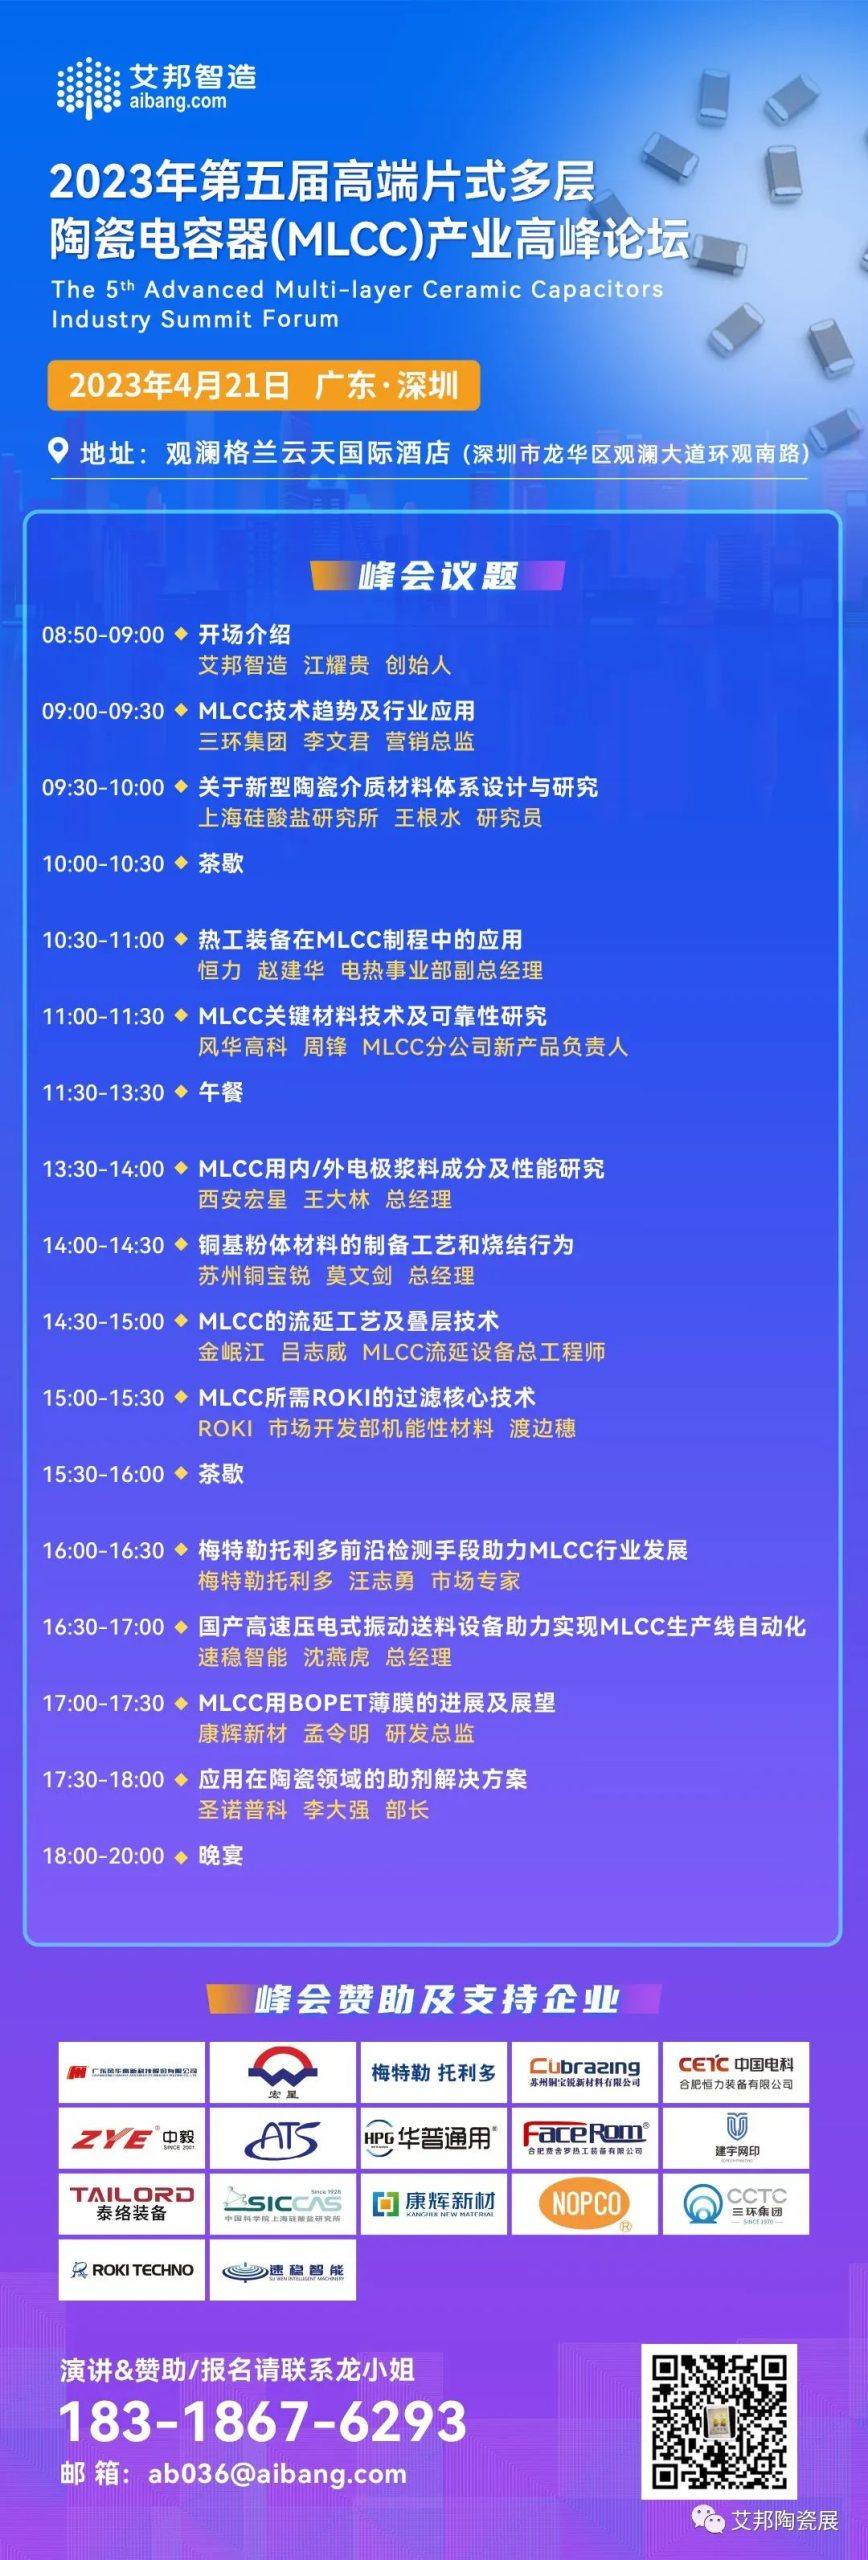 合肥恒力将出席深圳MLCC产业论坛并做主题演讲（4月21日 深圳）